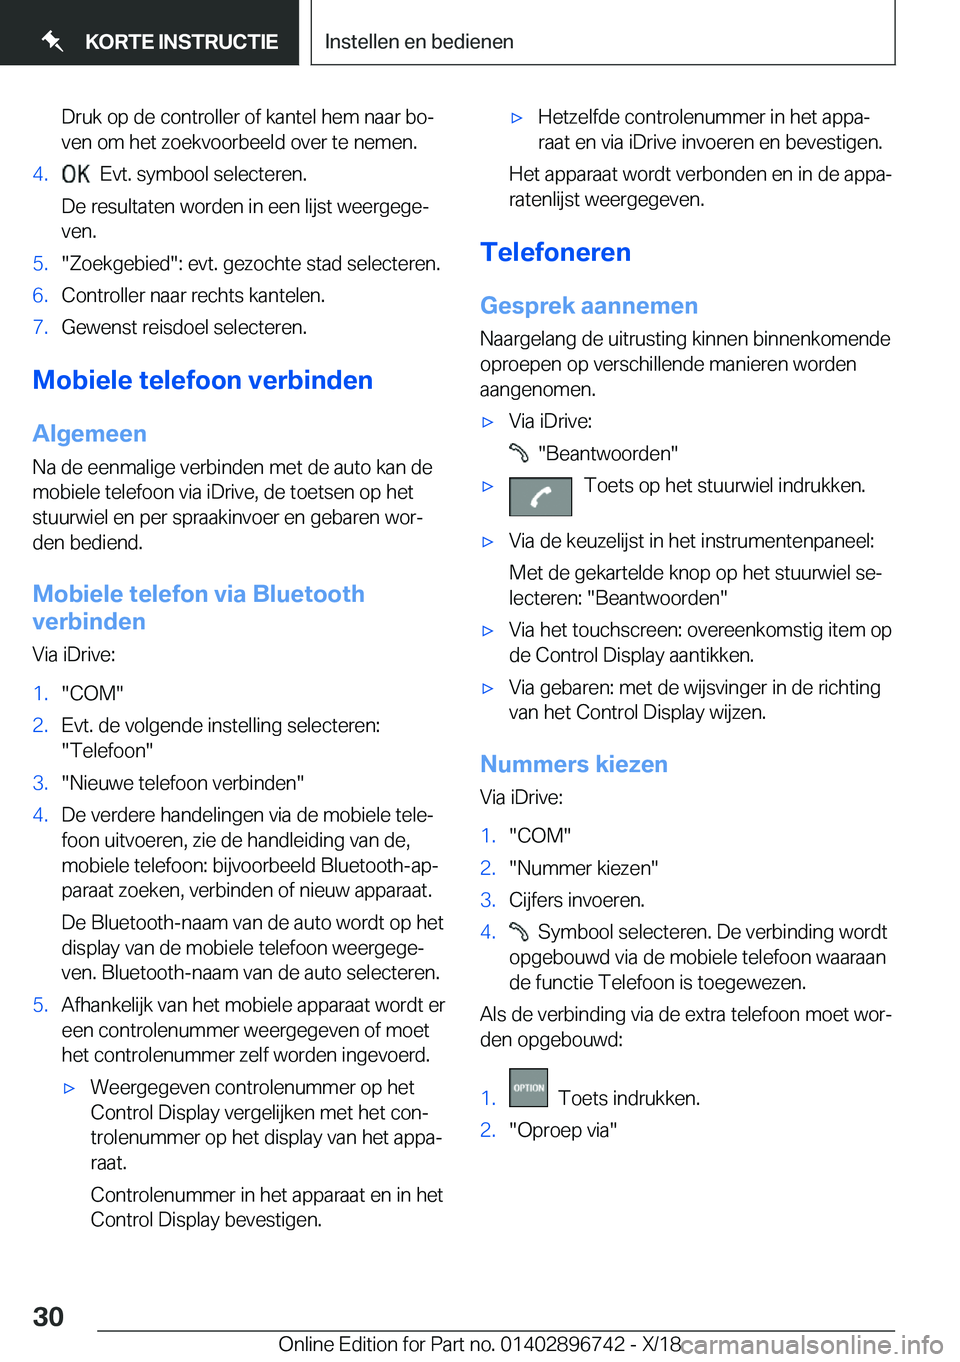 BMW X5 2019  Instructieboekjes (in Dutch) �D�r�u�k��o�p��d�e��c�o�n�t�r�o�l�l�e�r��o�f��k�a�n�t�e�l��h�e�m��n�a�a�r��b�oj�v�e�n��o�m��h�e�t��z�o�e�k�v�o�o�r�b�e�e�l�d��o�v�e�r��t�e��n�e�m�e�n�.�4�.���E�v�t�.��s�y�m�b�o�o�l�